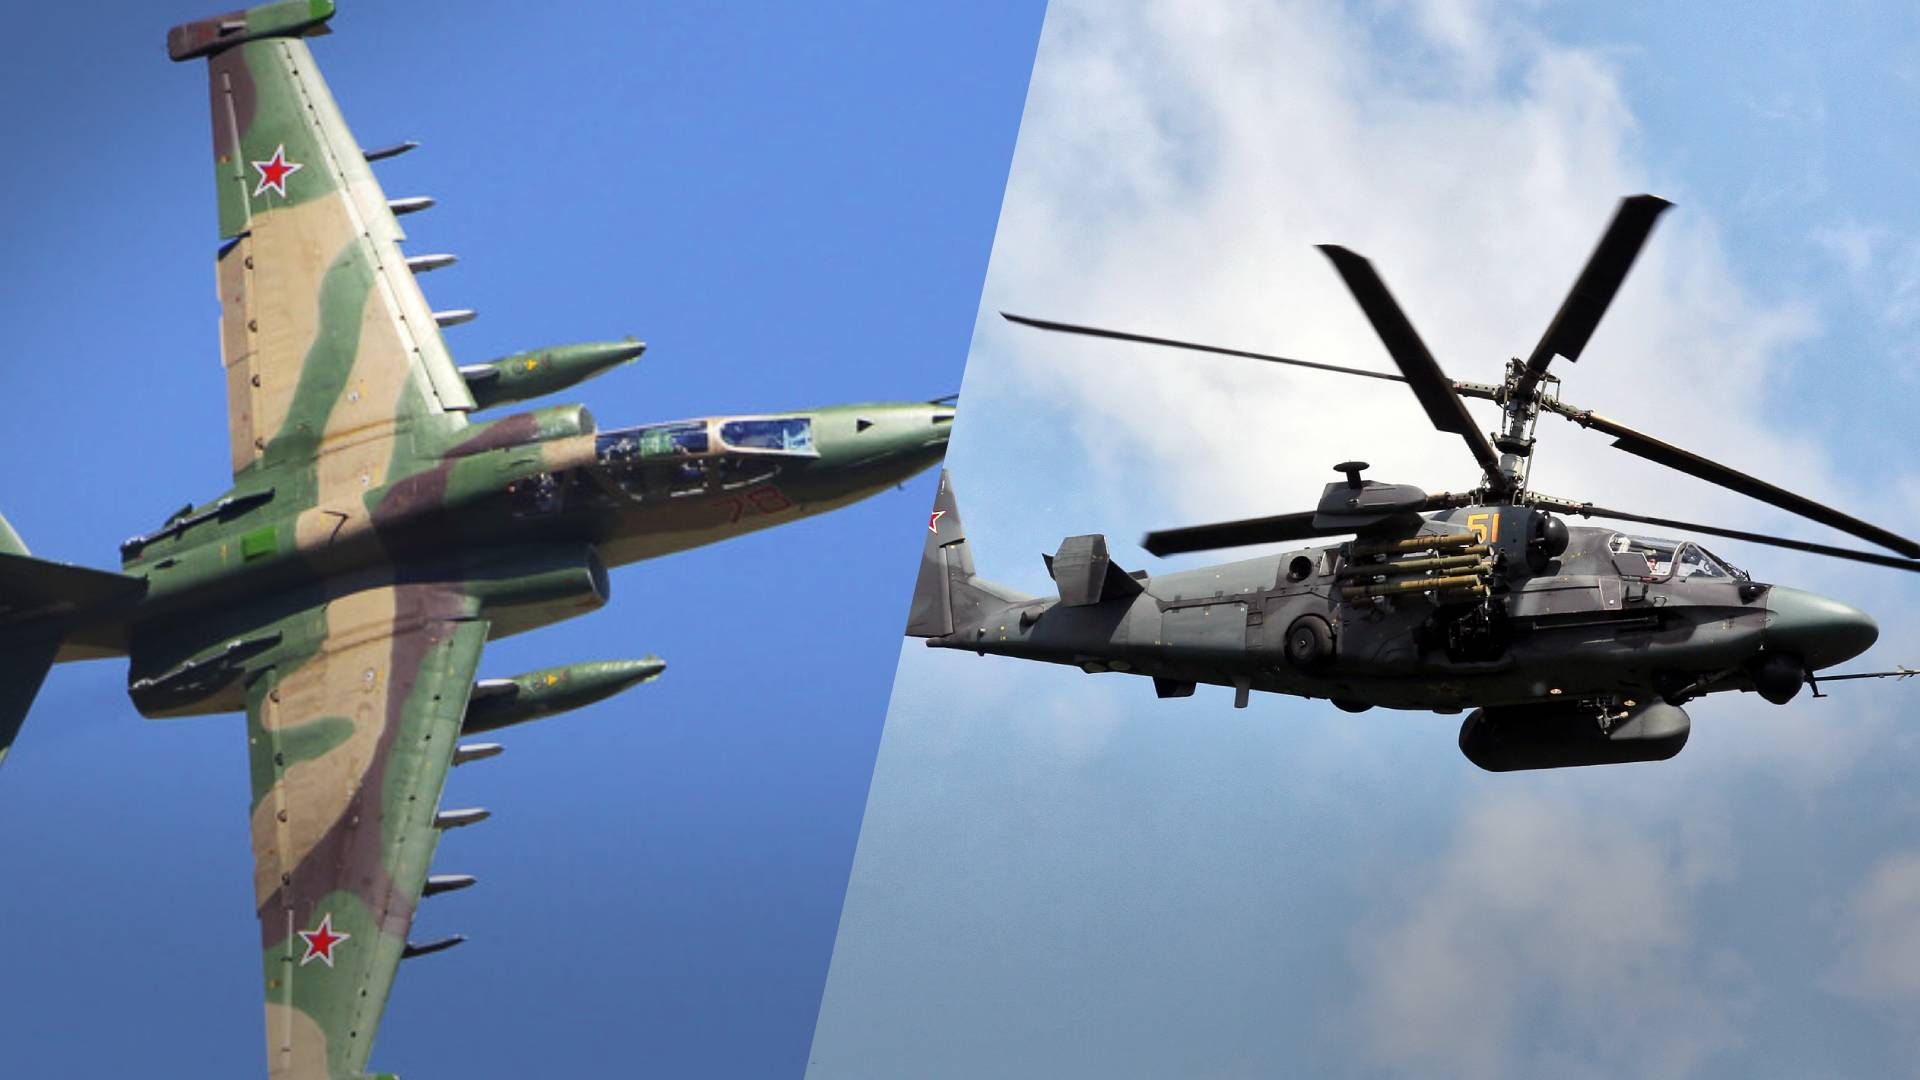 ВСУ сбили вражеские штурмовик Су-25 и вертолет Ка-52 4 января 2023 год